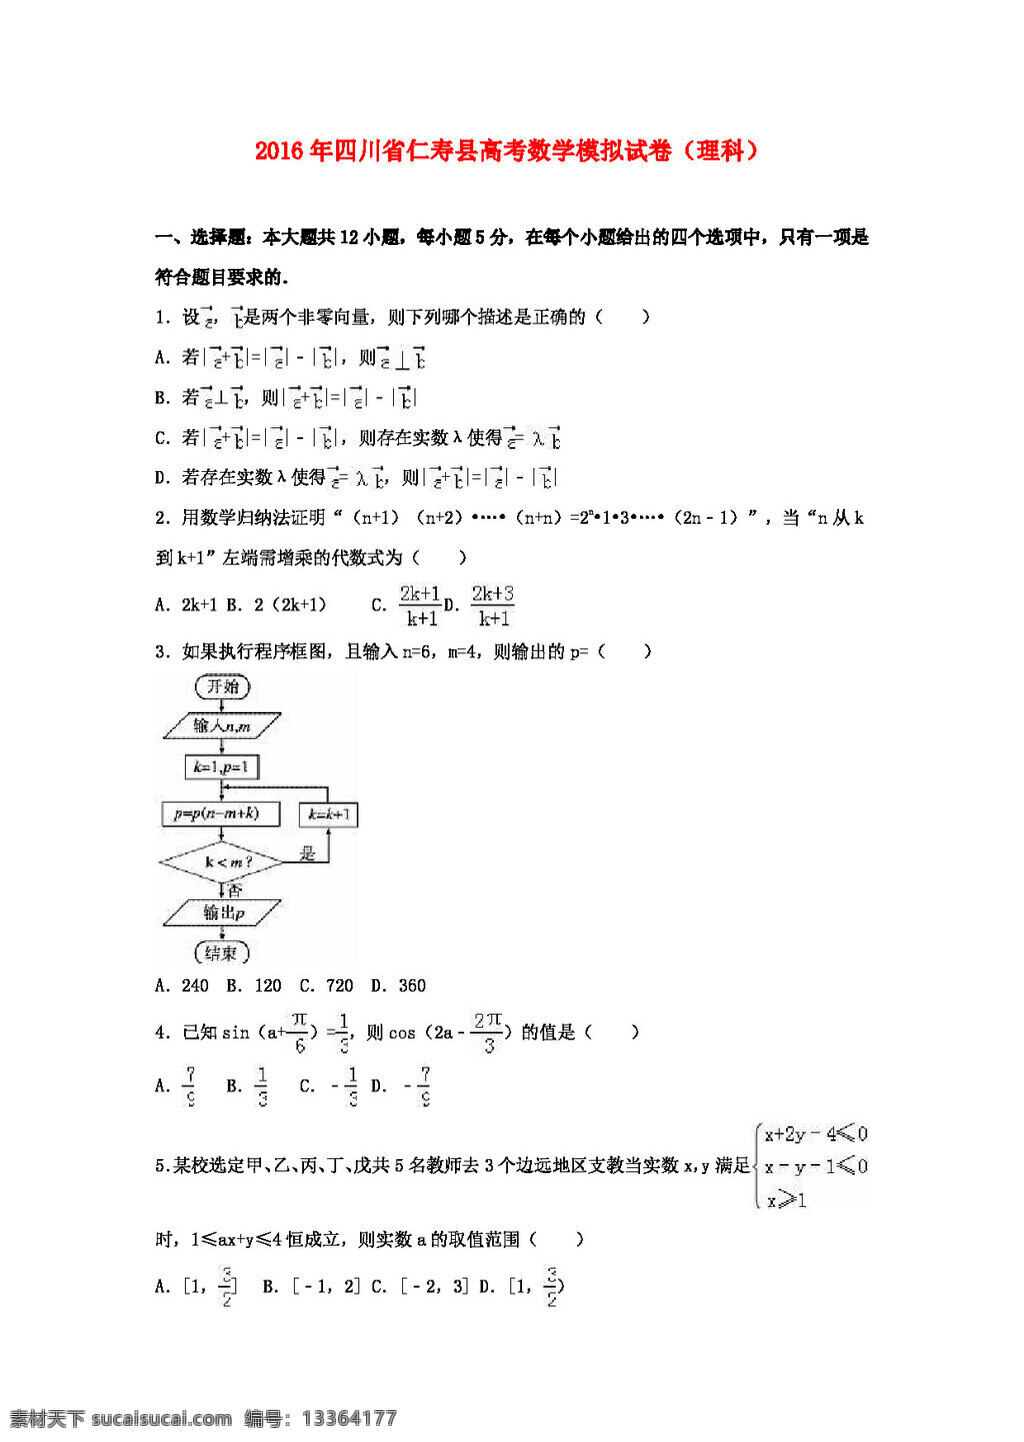 数学 人教 版 2016 年 四川省 仁寿县 高考 模拟试卷 理科 理 含 解析 高考专区 人教版 试卷